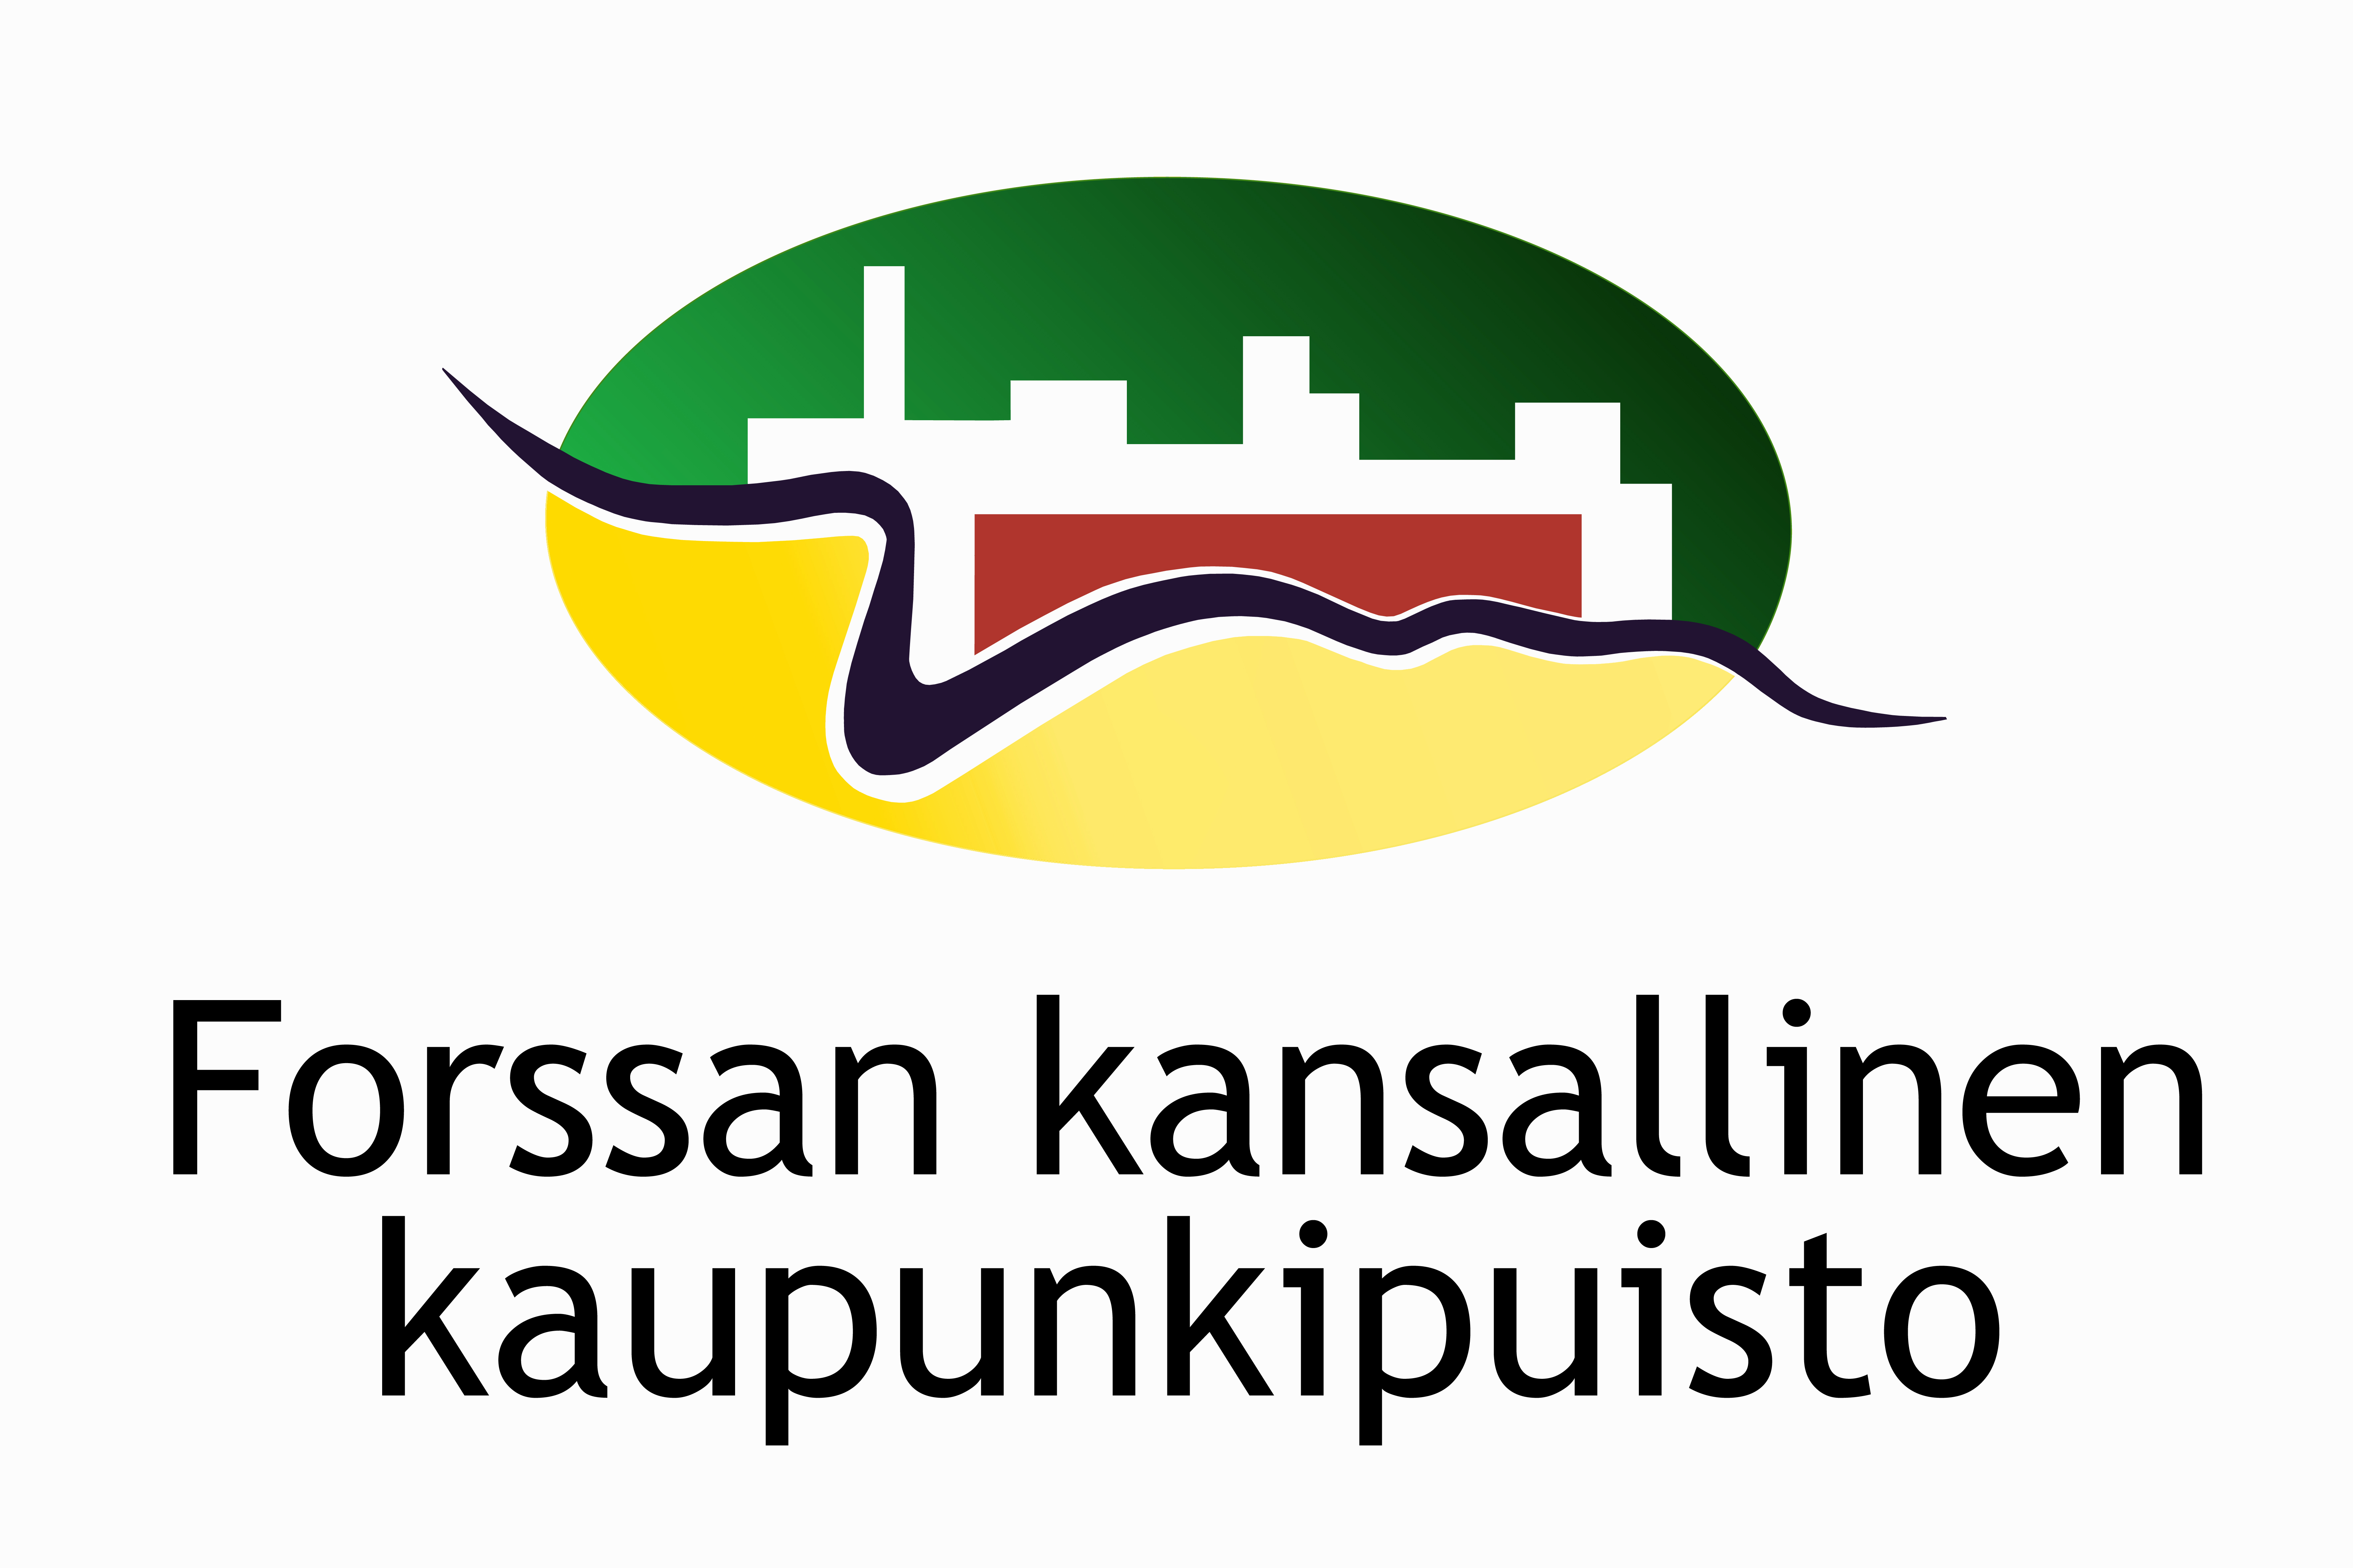 Forssan kansallinen kaupunkipuisto logo